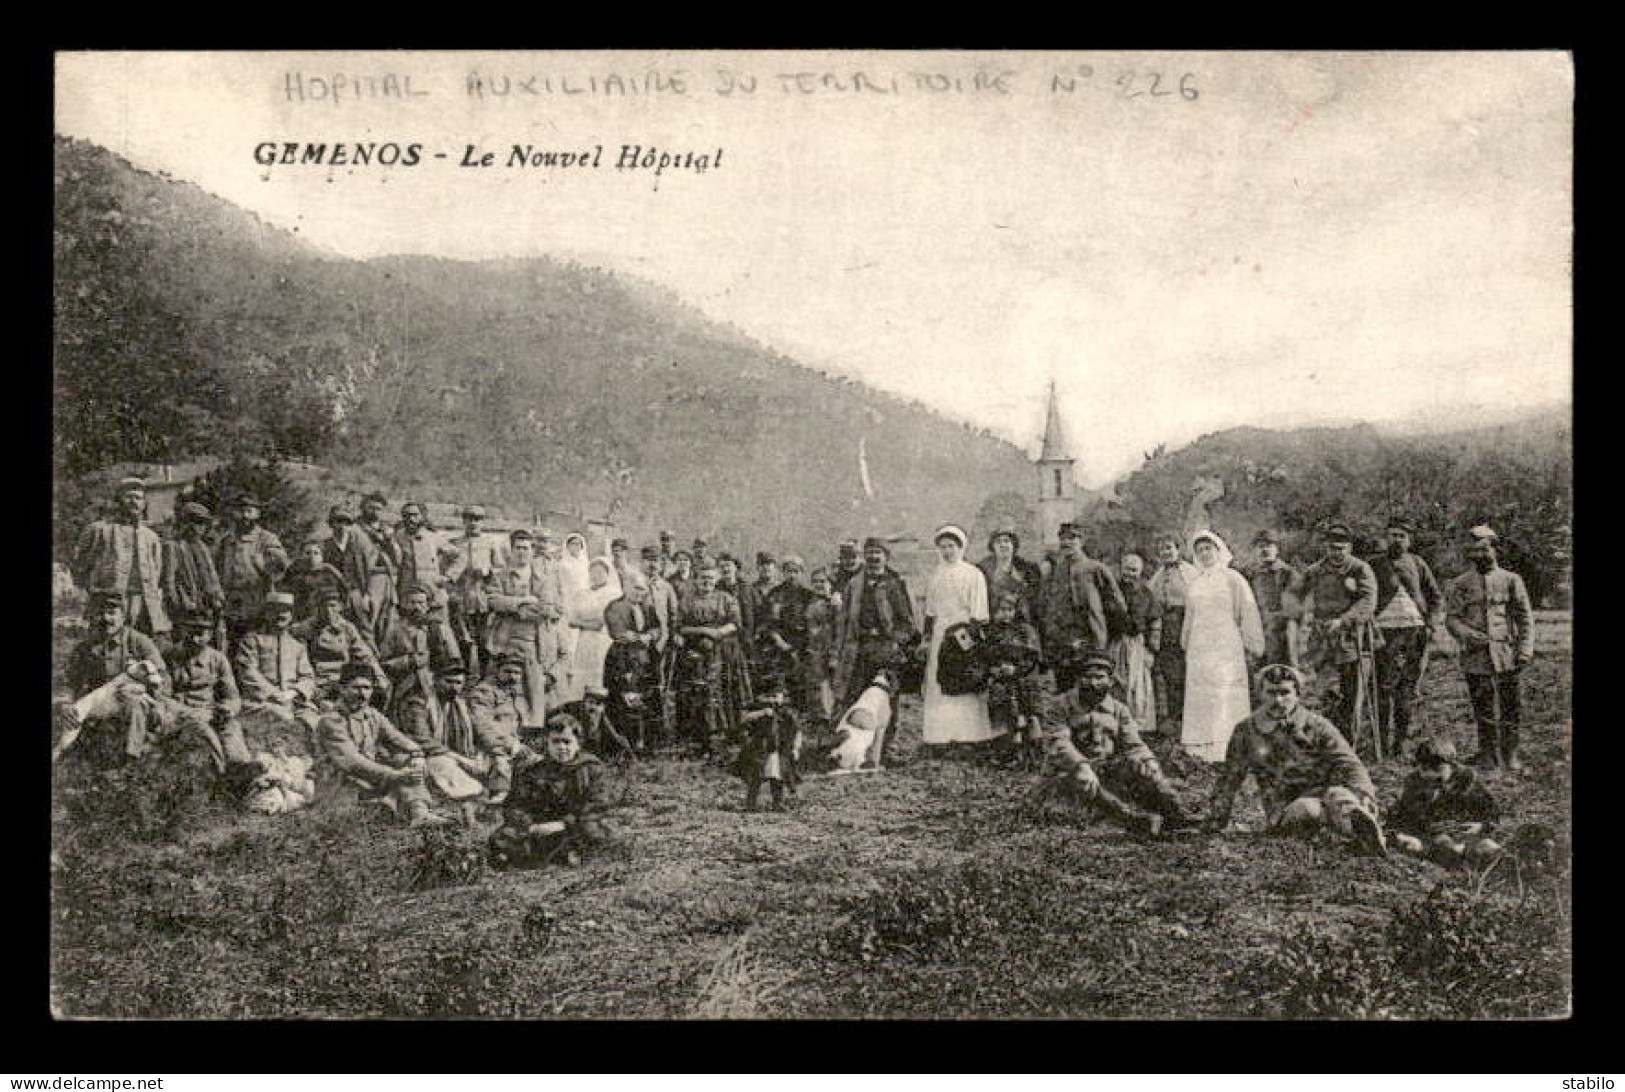 GEMENOS (BOUCHES-DU-RHONE) - CACHET HOPITAL AUXILIAIRE DU TERRITOIRE N°226 - LE NOUVEL HOPITAL - 1. Weltkrieg 1914-1918